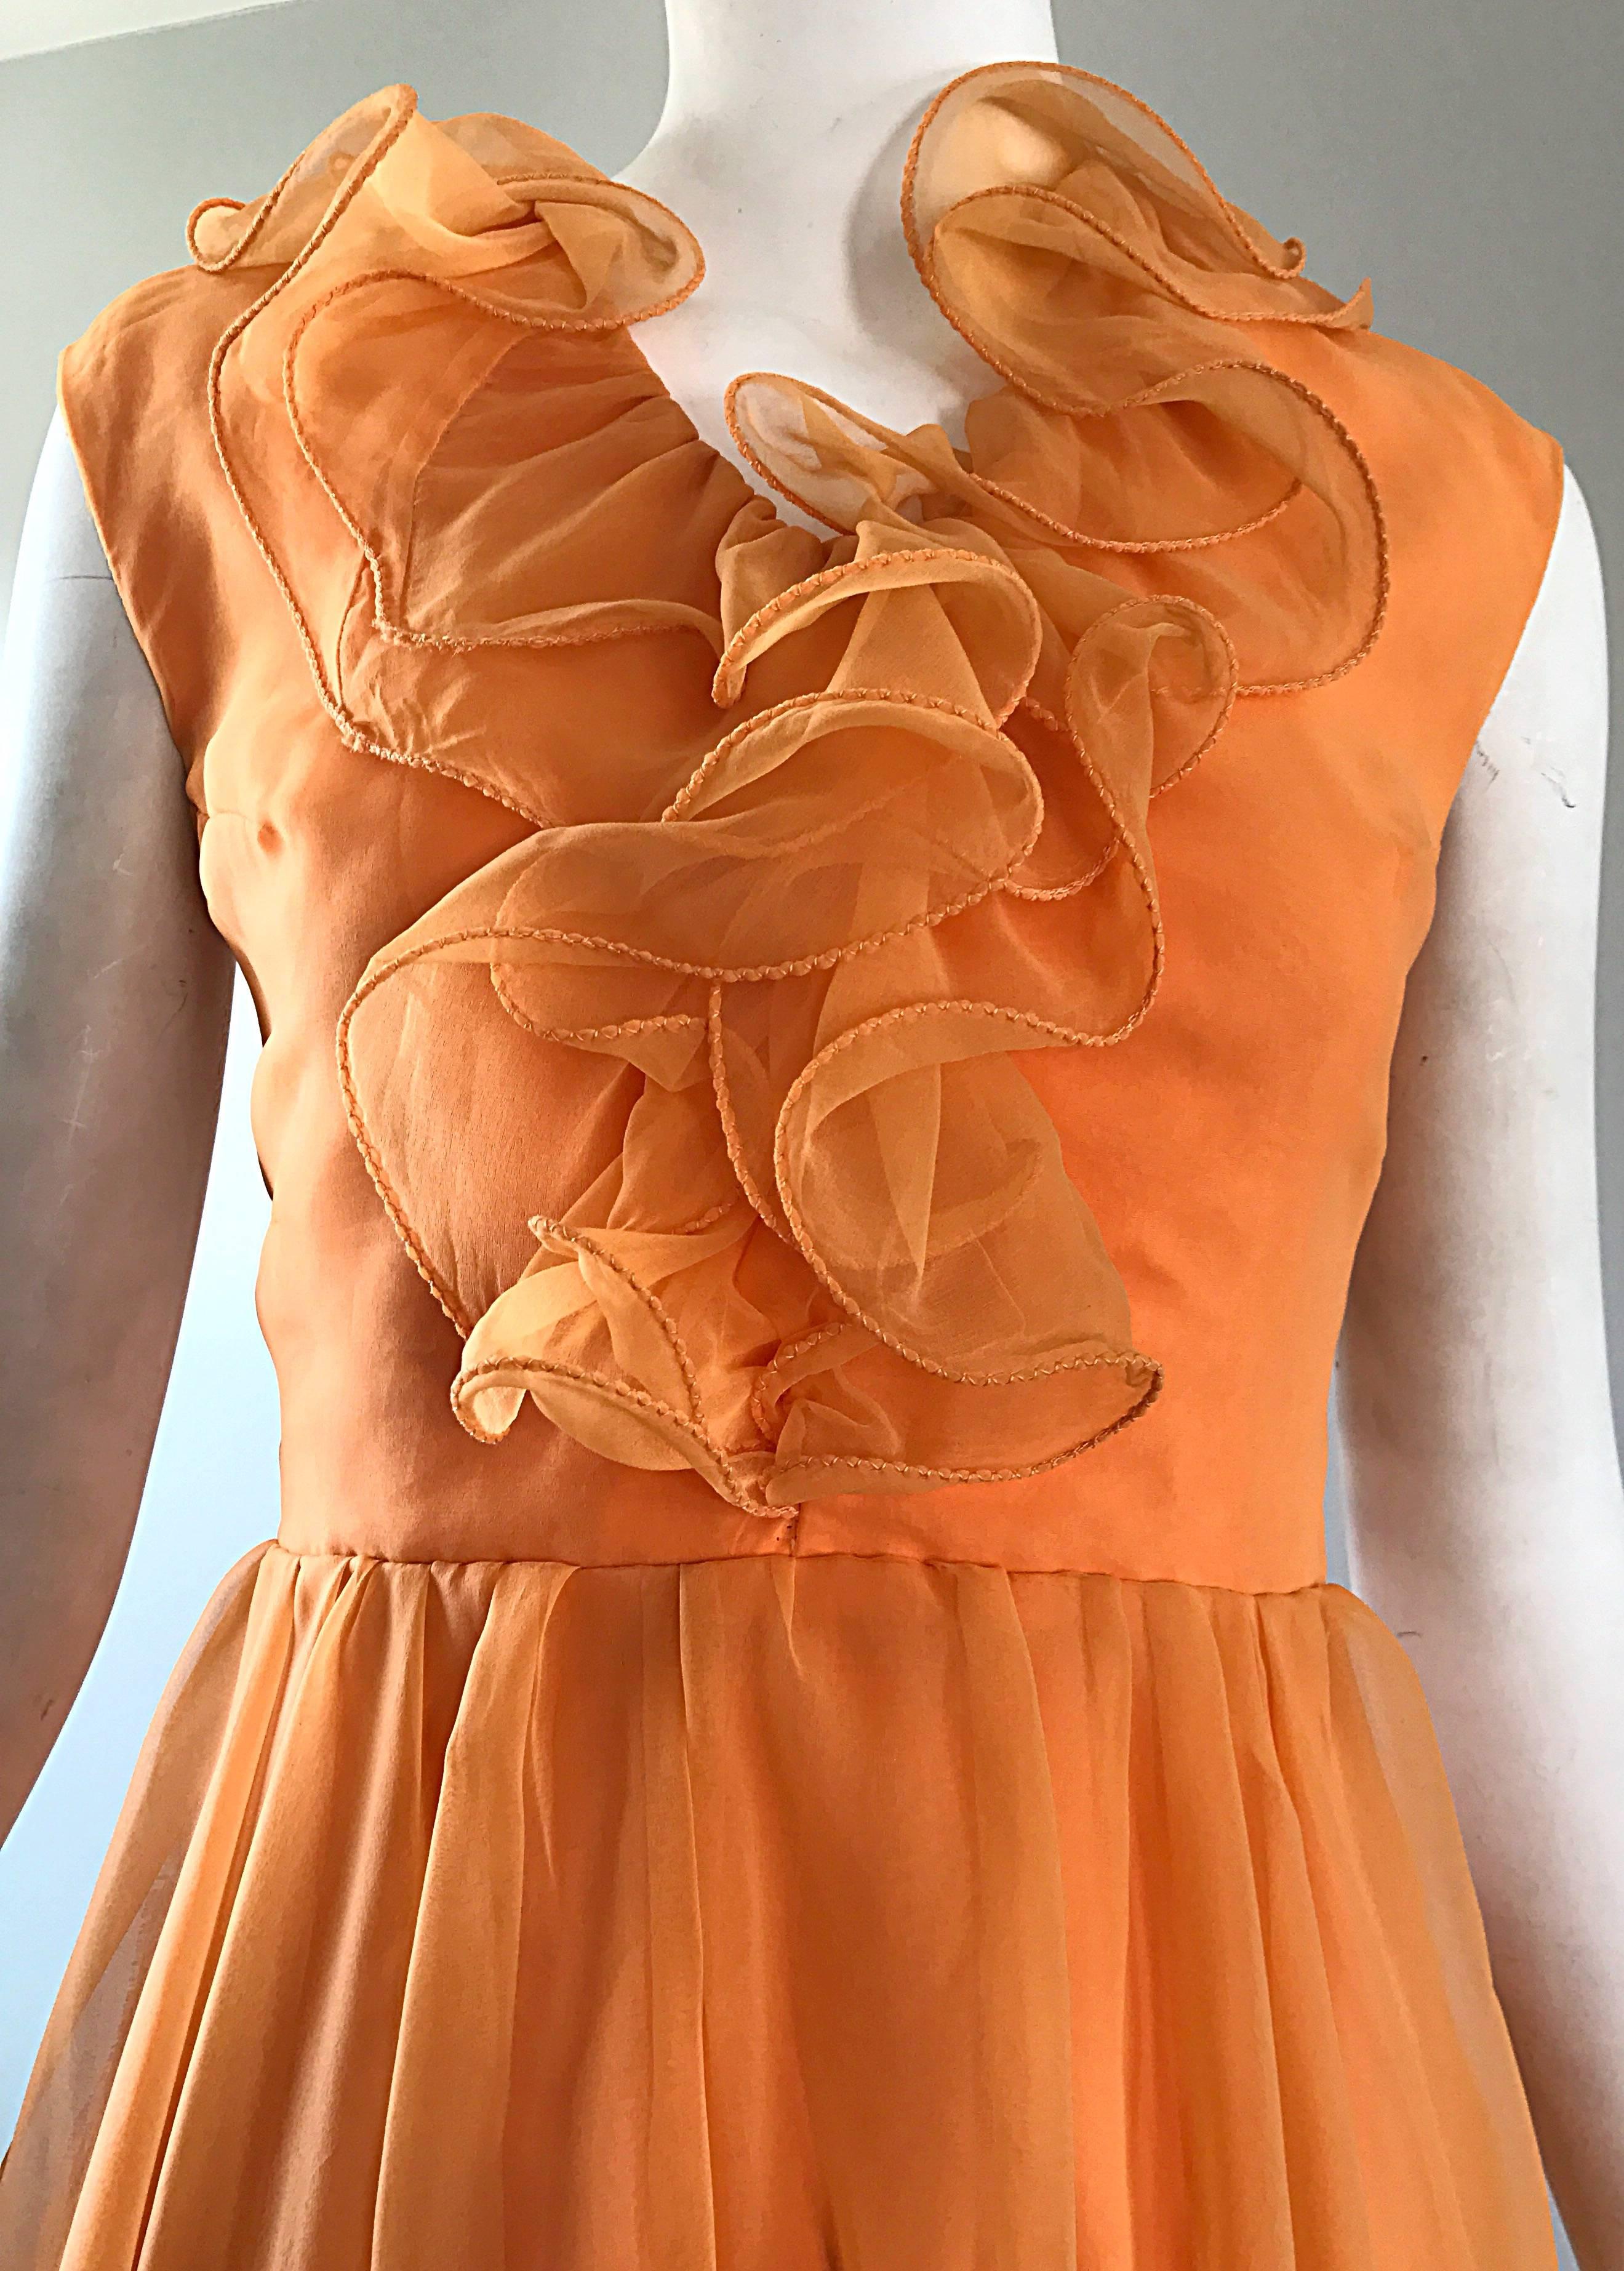 Robe chic des années 1960 en mousseline de soie orange Sorbert avec volants détaillés ! Le corsage est ajusté et la jupe est ample et flatteuse. Fermeture à glissière entièrement métallique dans le dos avec fermeture à crochet. Entièrement doublée,